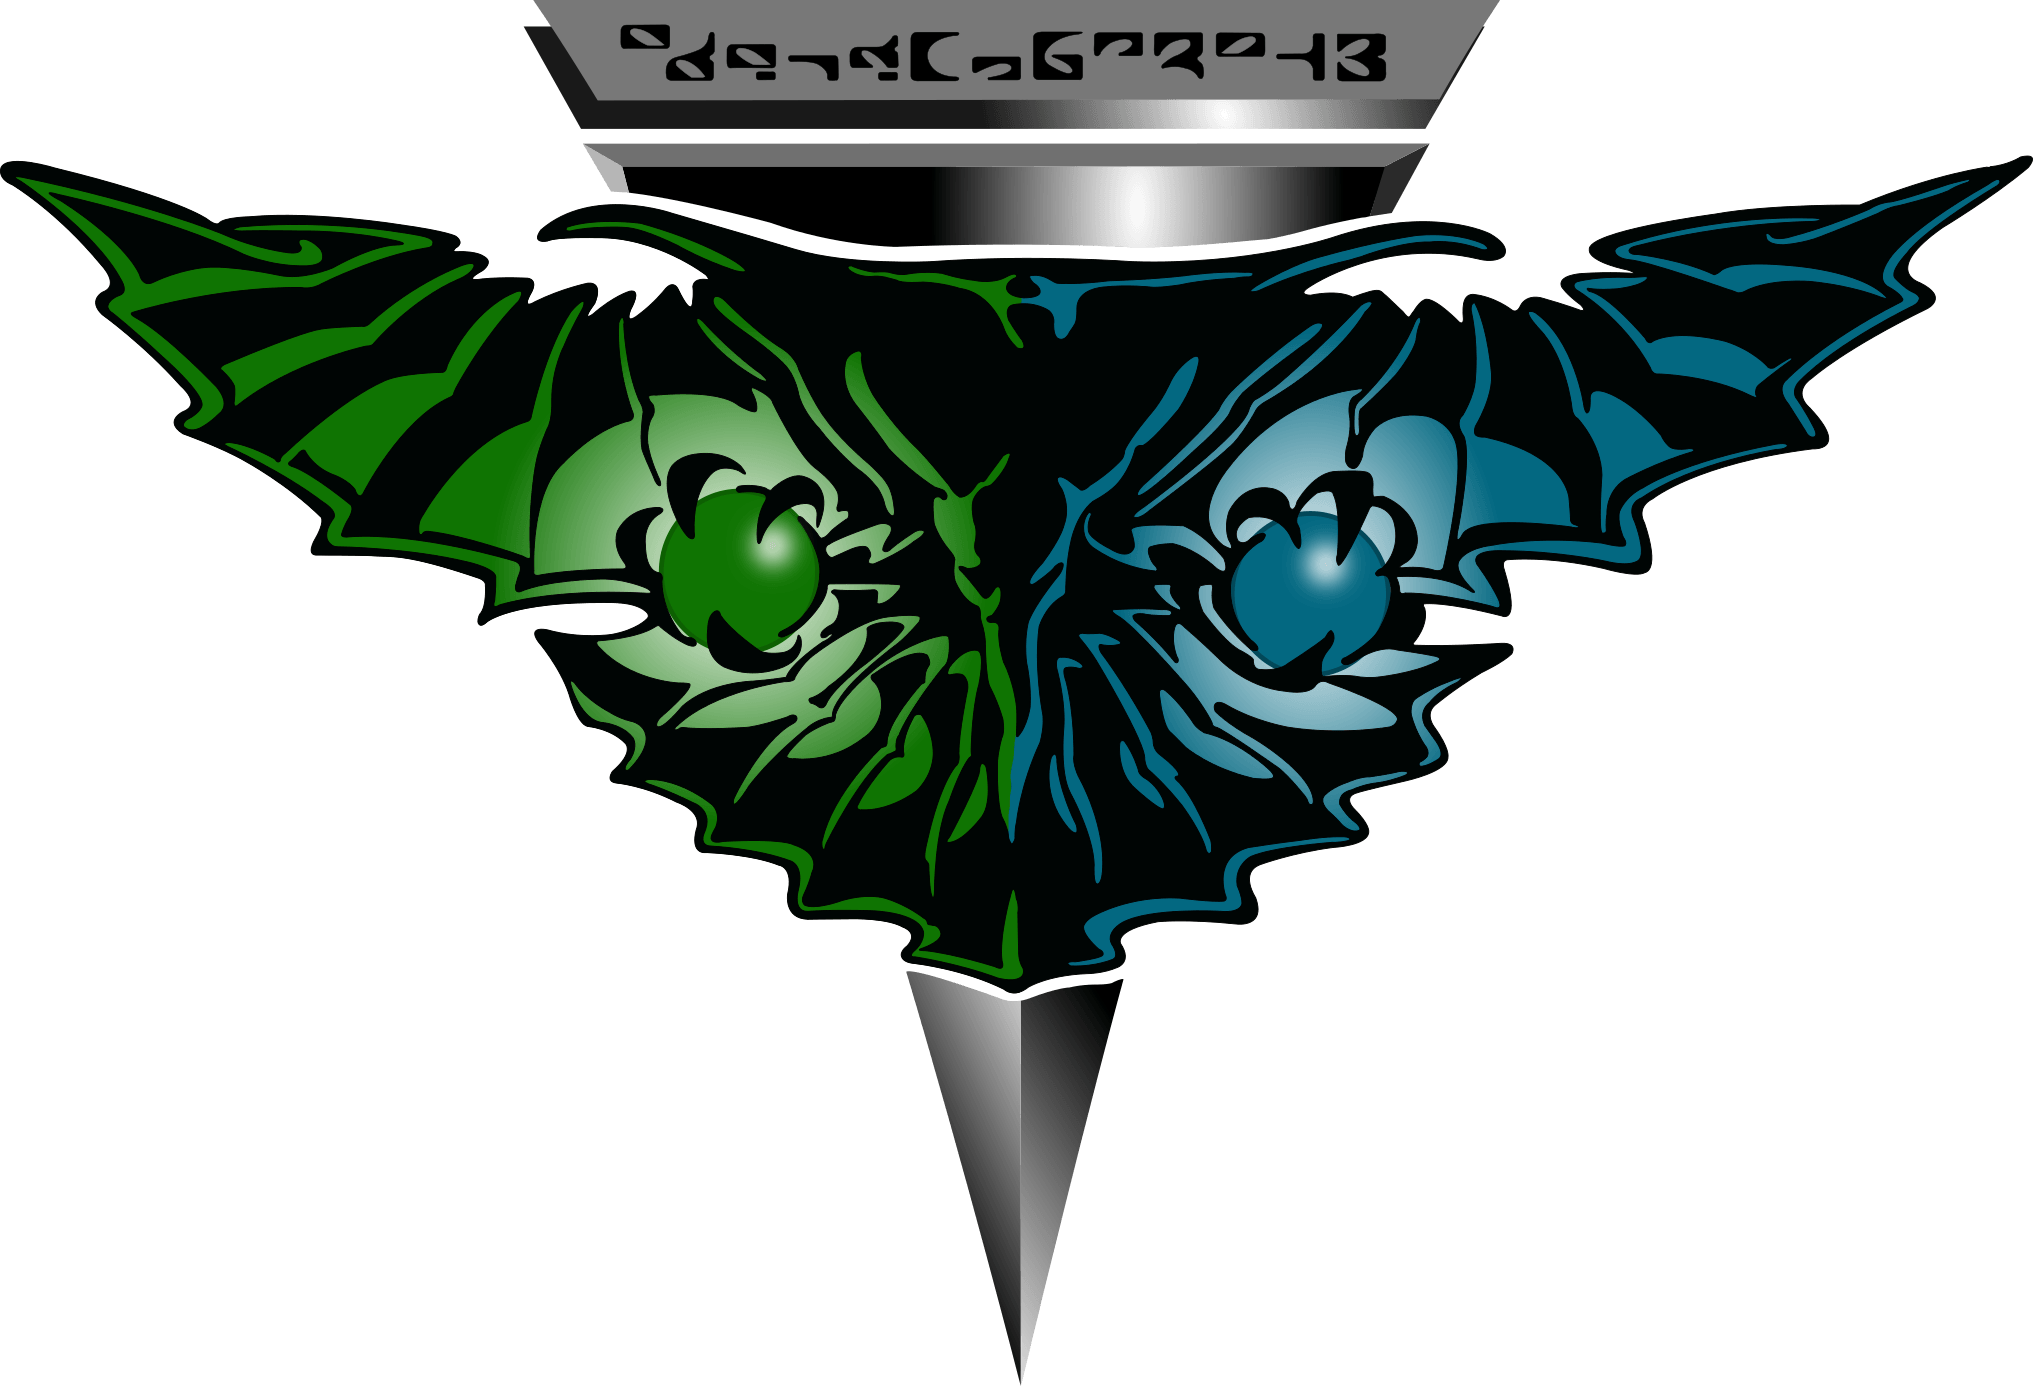 Romulan Logo - Ex Astris Scientia Alien Emblems